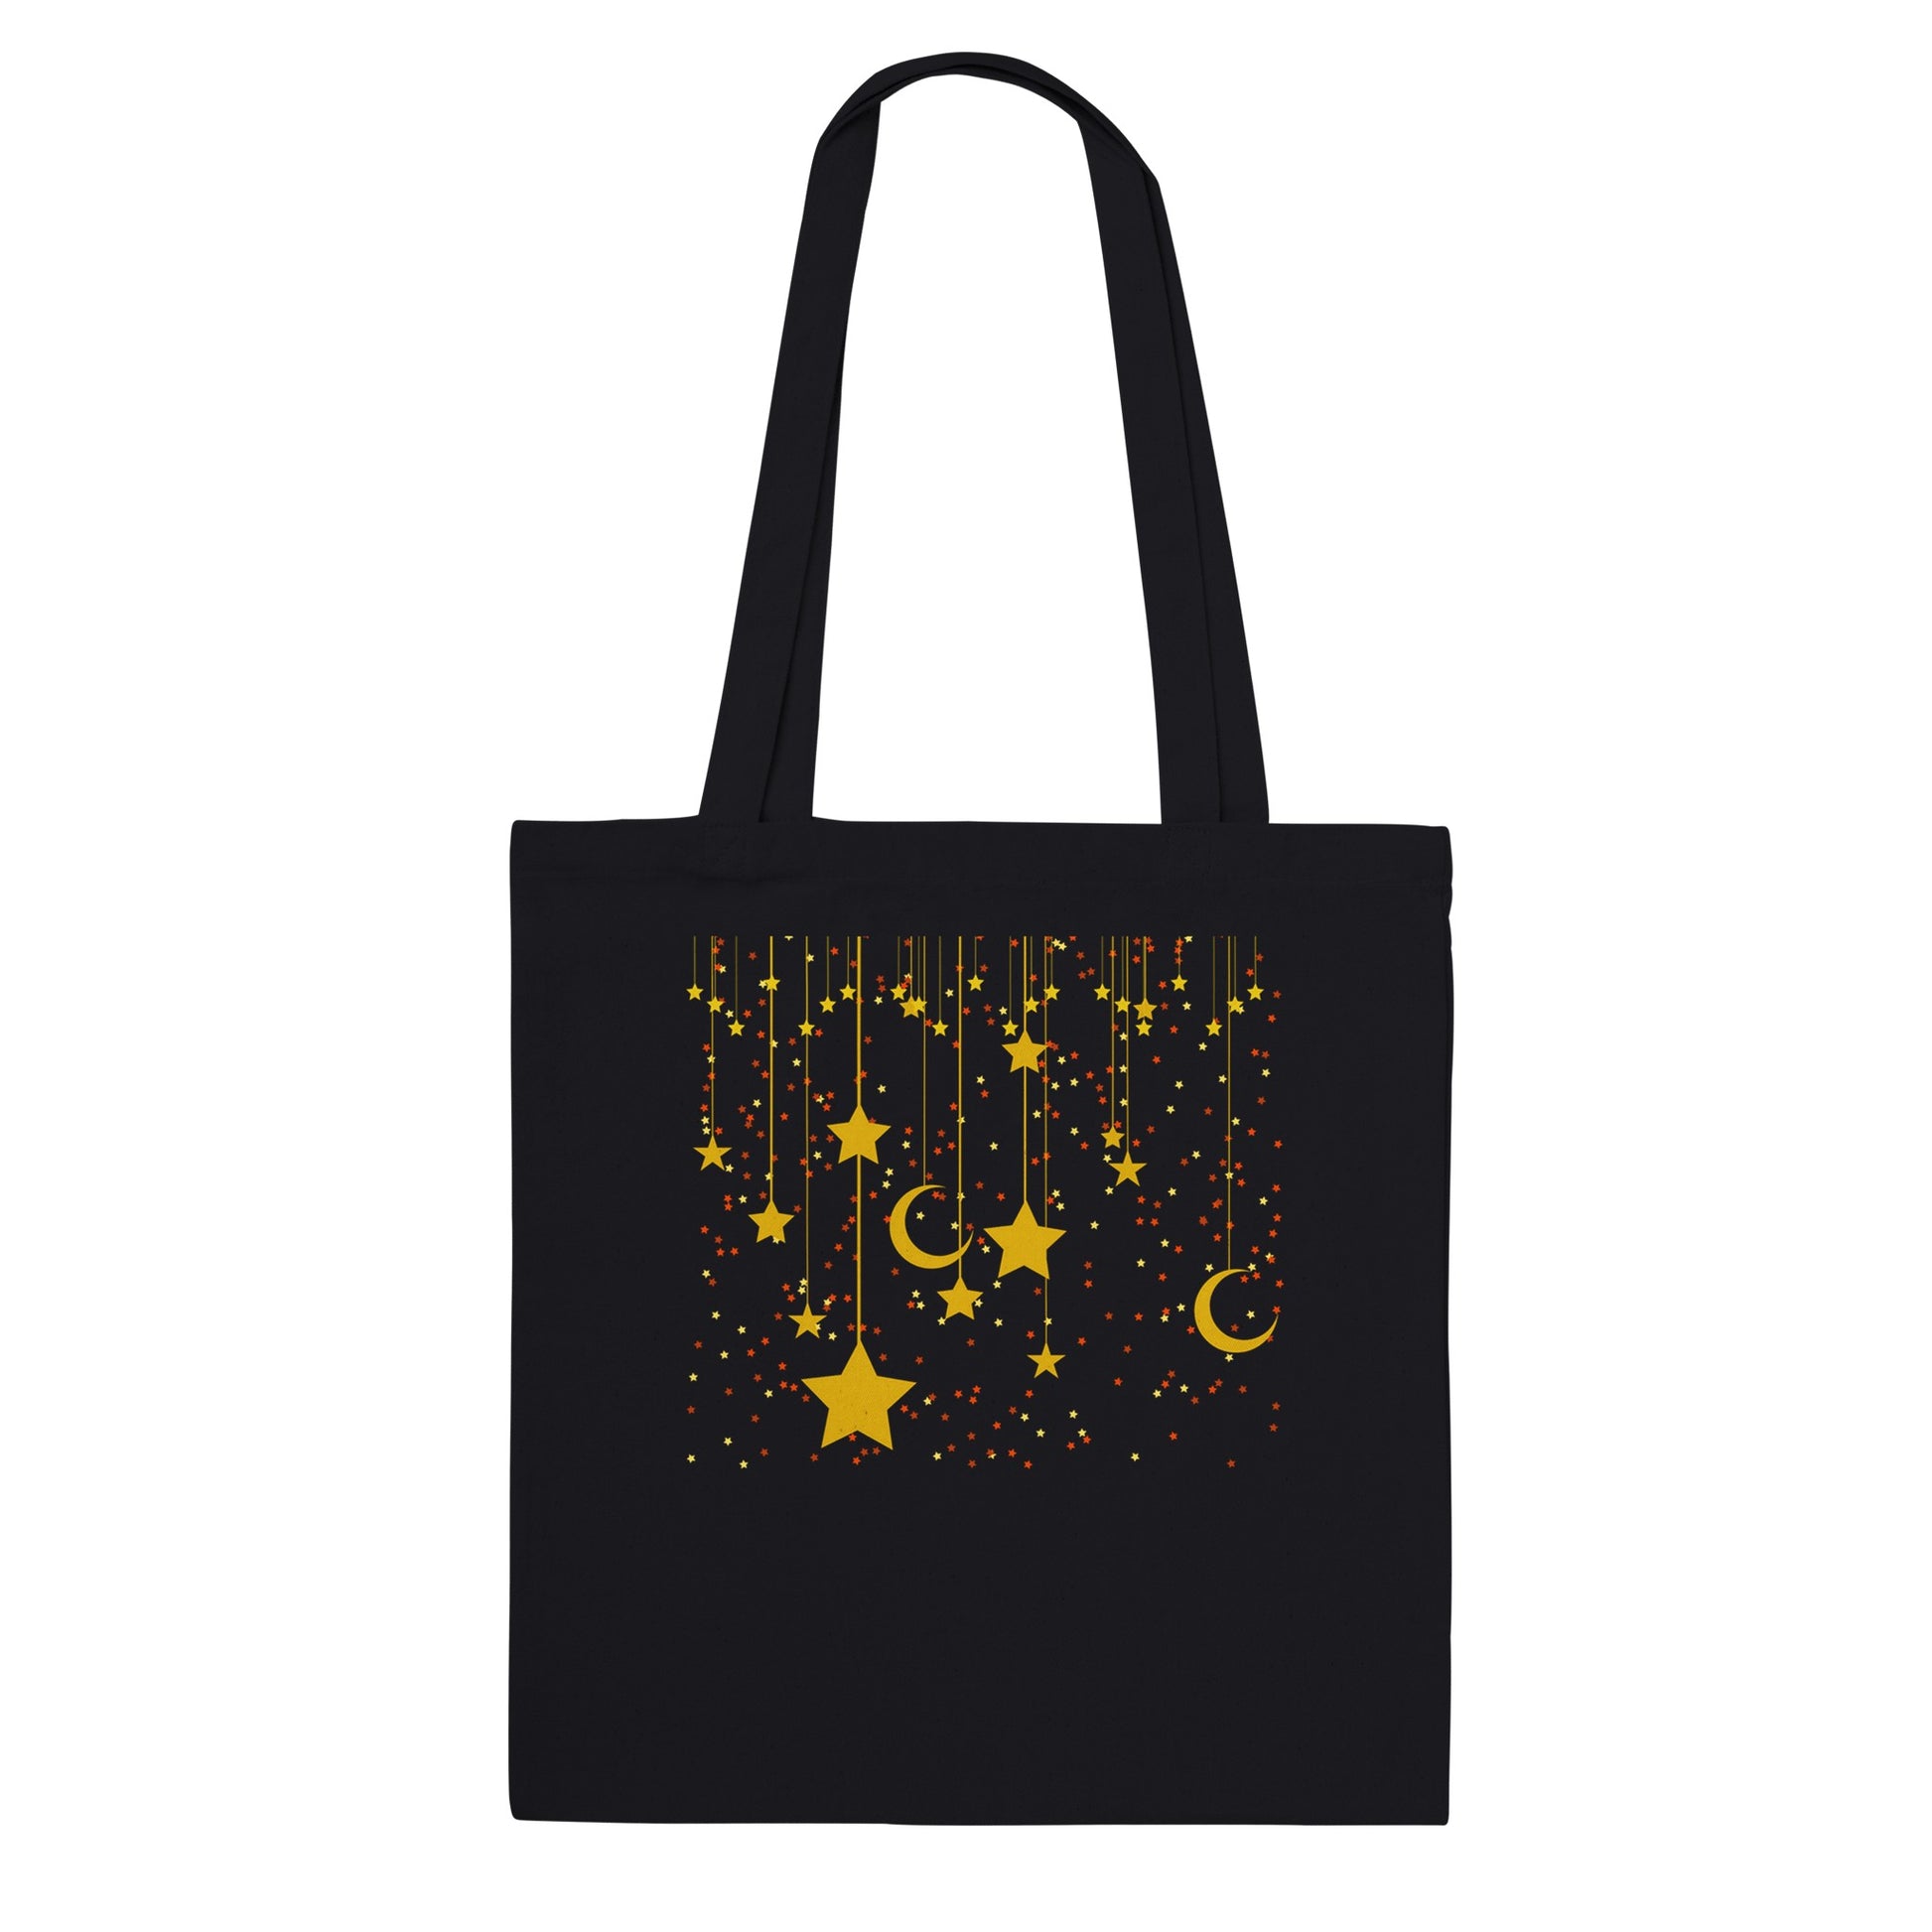 Bolsa de tela negra en algodón con diseño original de lunas y estrellas